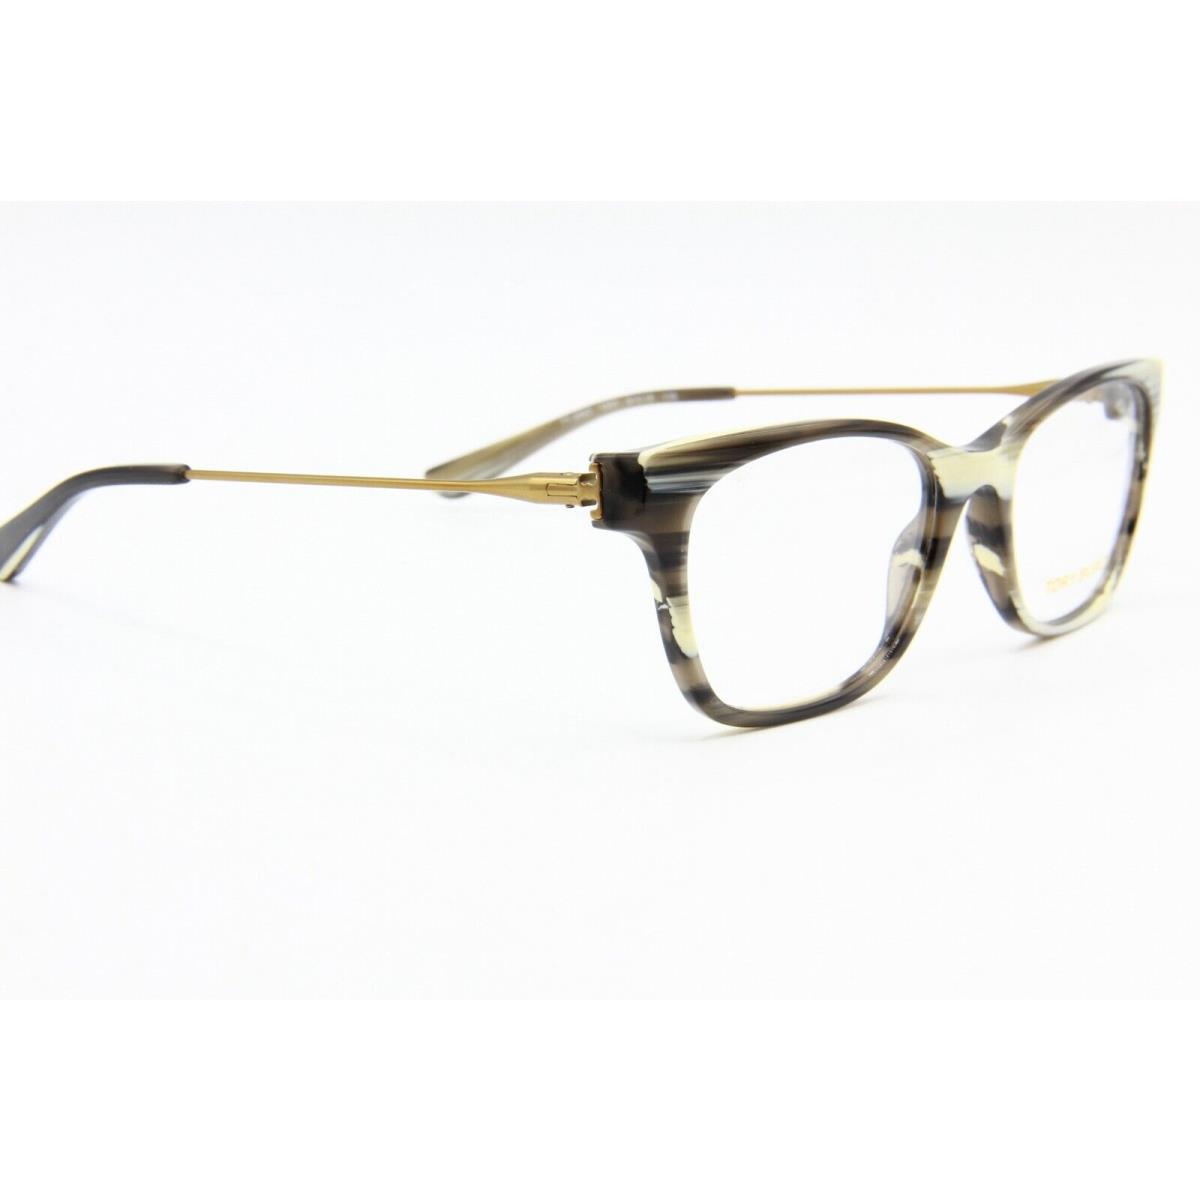 Tory Burch eyeglasses  - HORN Frame 1